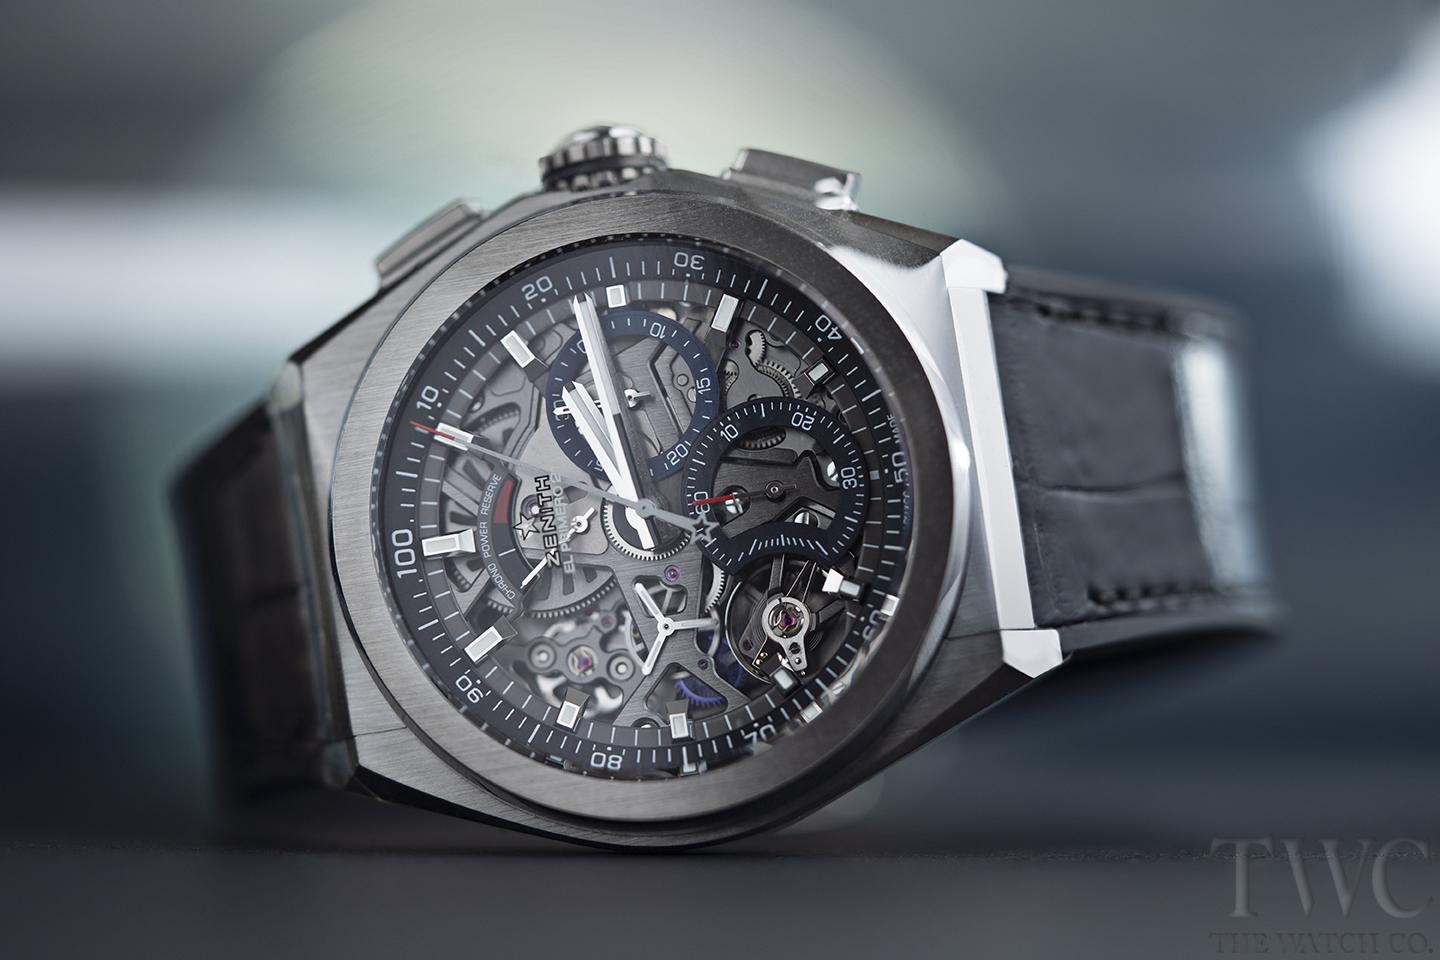 スケルトン タイプのメンズ腕時計で注目の男性ブランドモデルtop5 The Watch Company